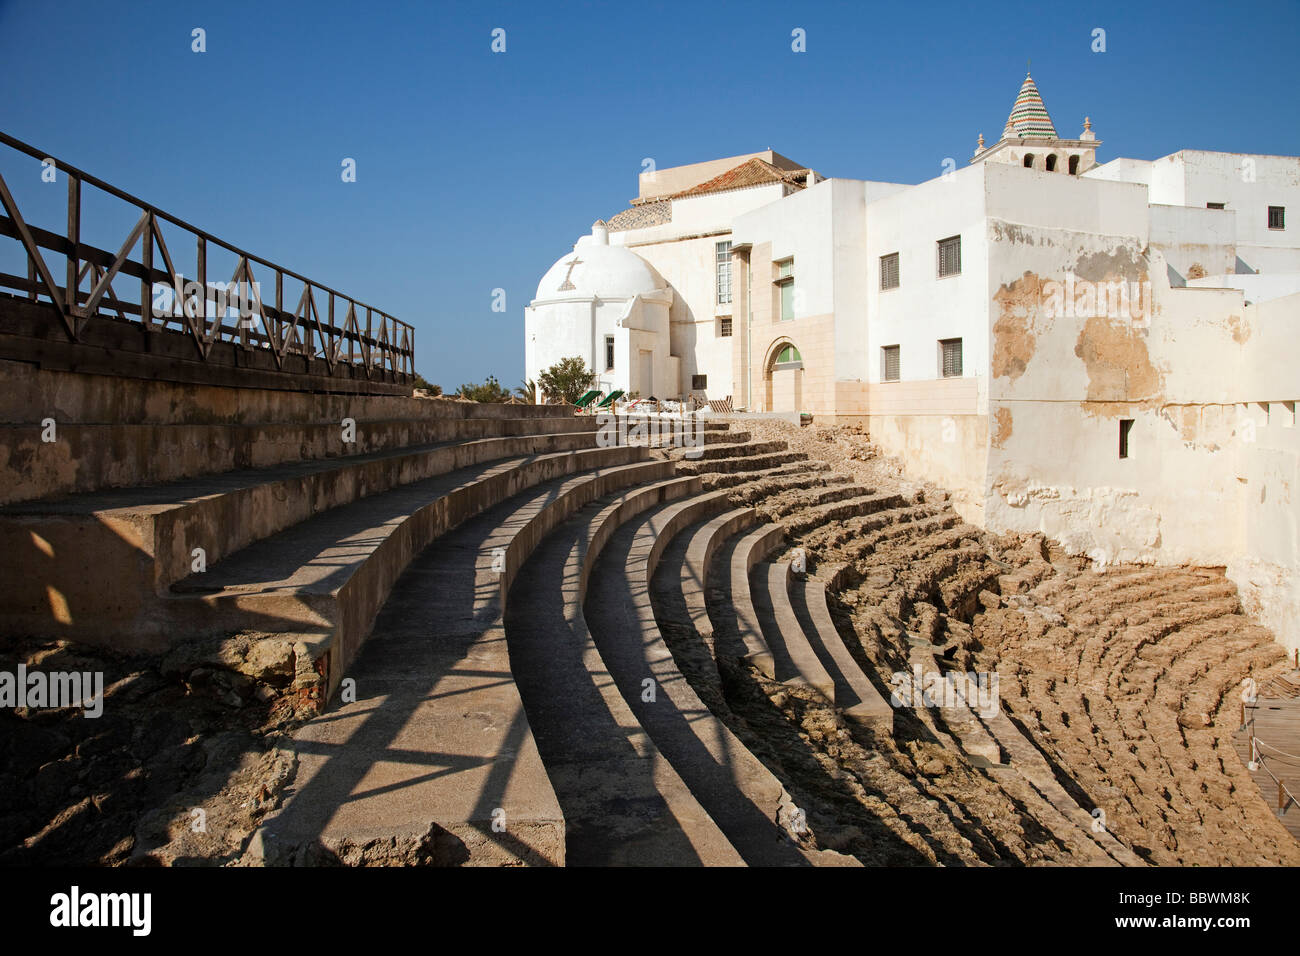 Teatro Romano de Cádiz Andalucía España Roman theater in Cadiz Andalusia Spain Stock Photo